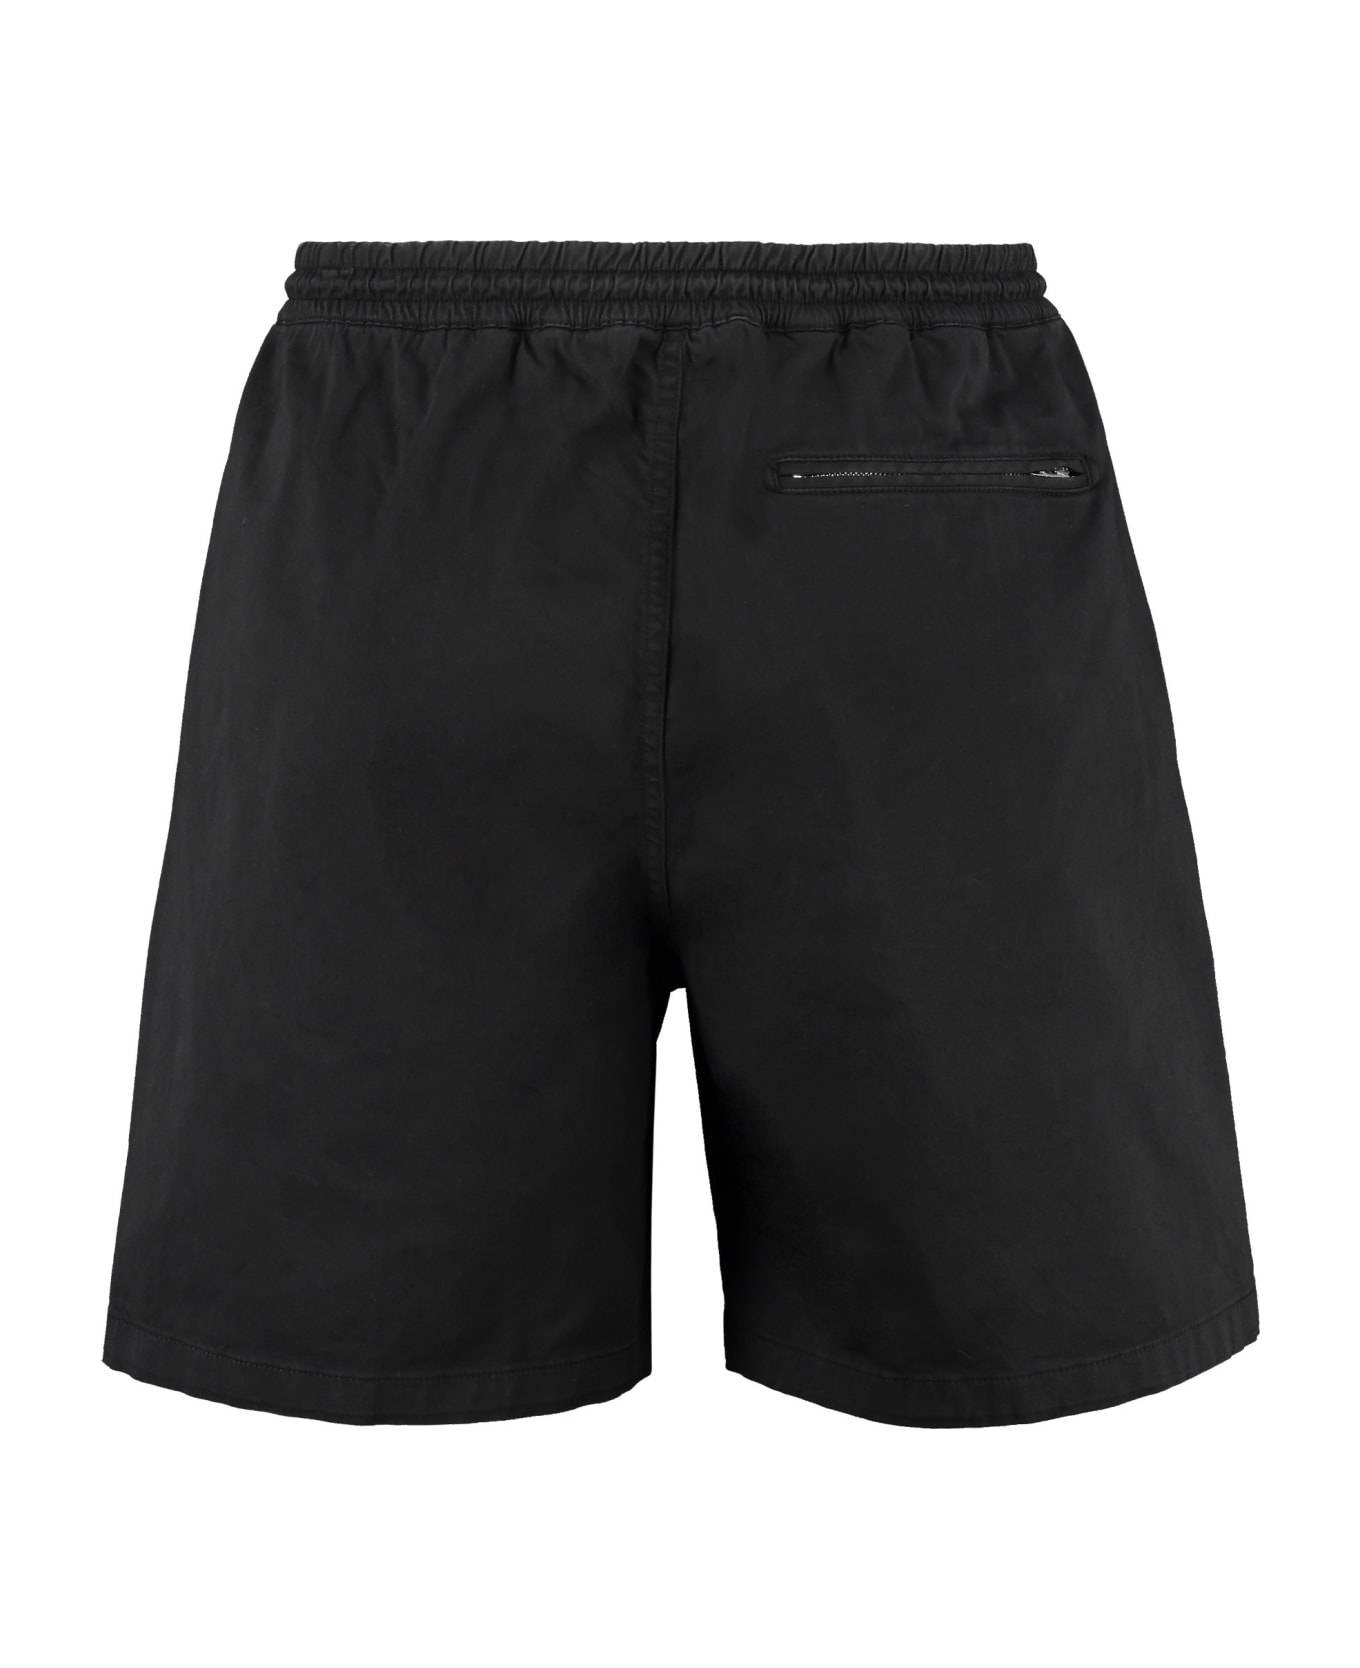 Department Five Collins Cotton Bermuda Shorts - black ショートパンツ